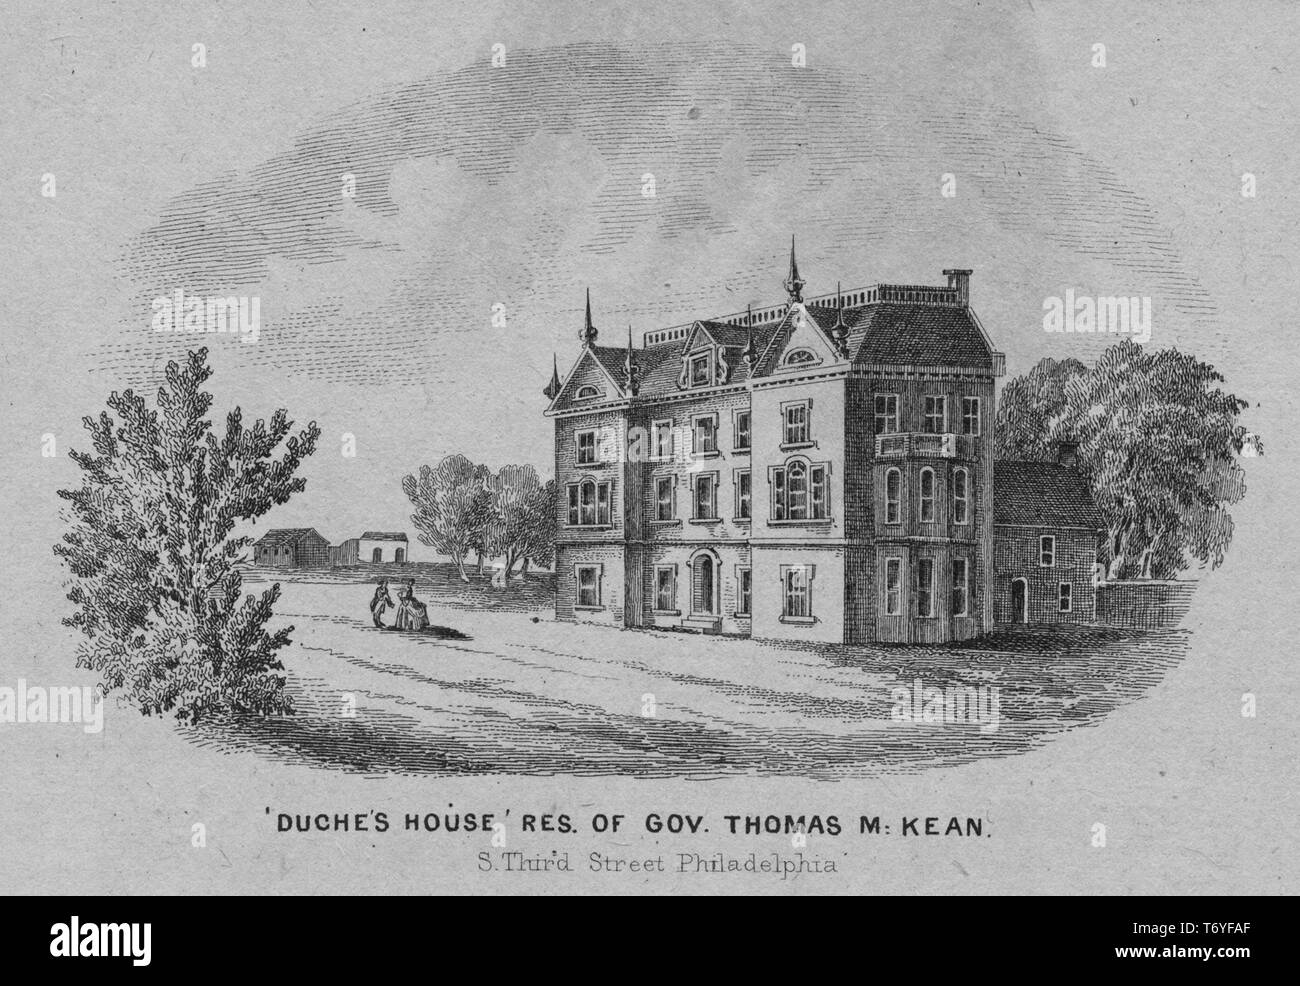 Incisione del Duche's house, la residenza del governatore Thomas McKean a sud di Third Street a Philadelphia, Pennsylvania, 1850. Dalla Biblioteca Pubblica di New York. () Foto Stock